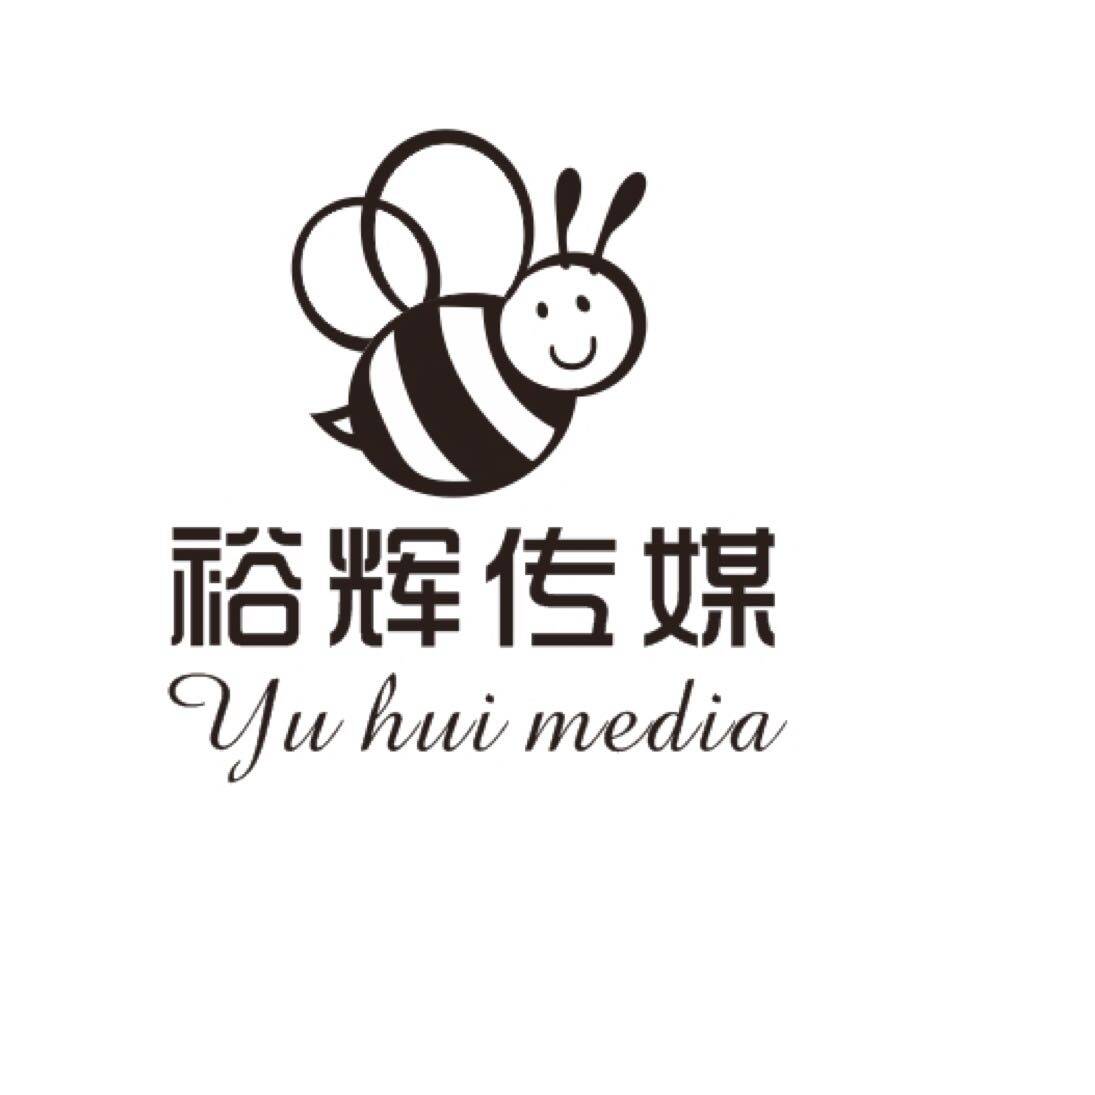 裕辉文化传媒招聘logo